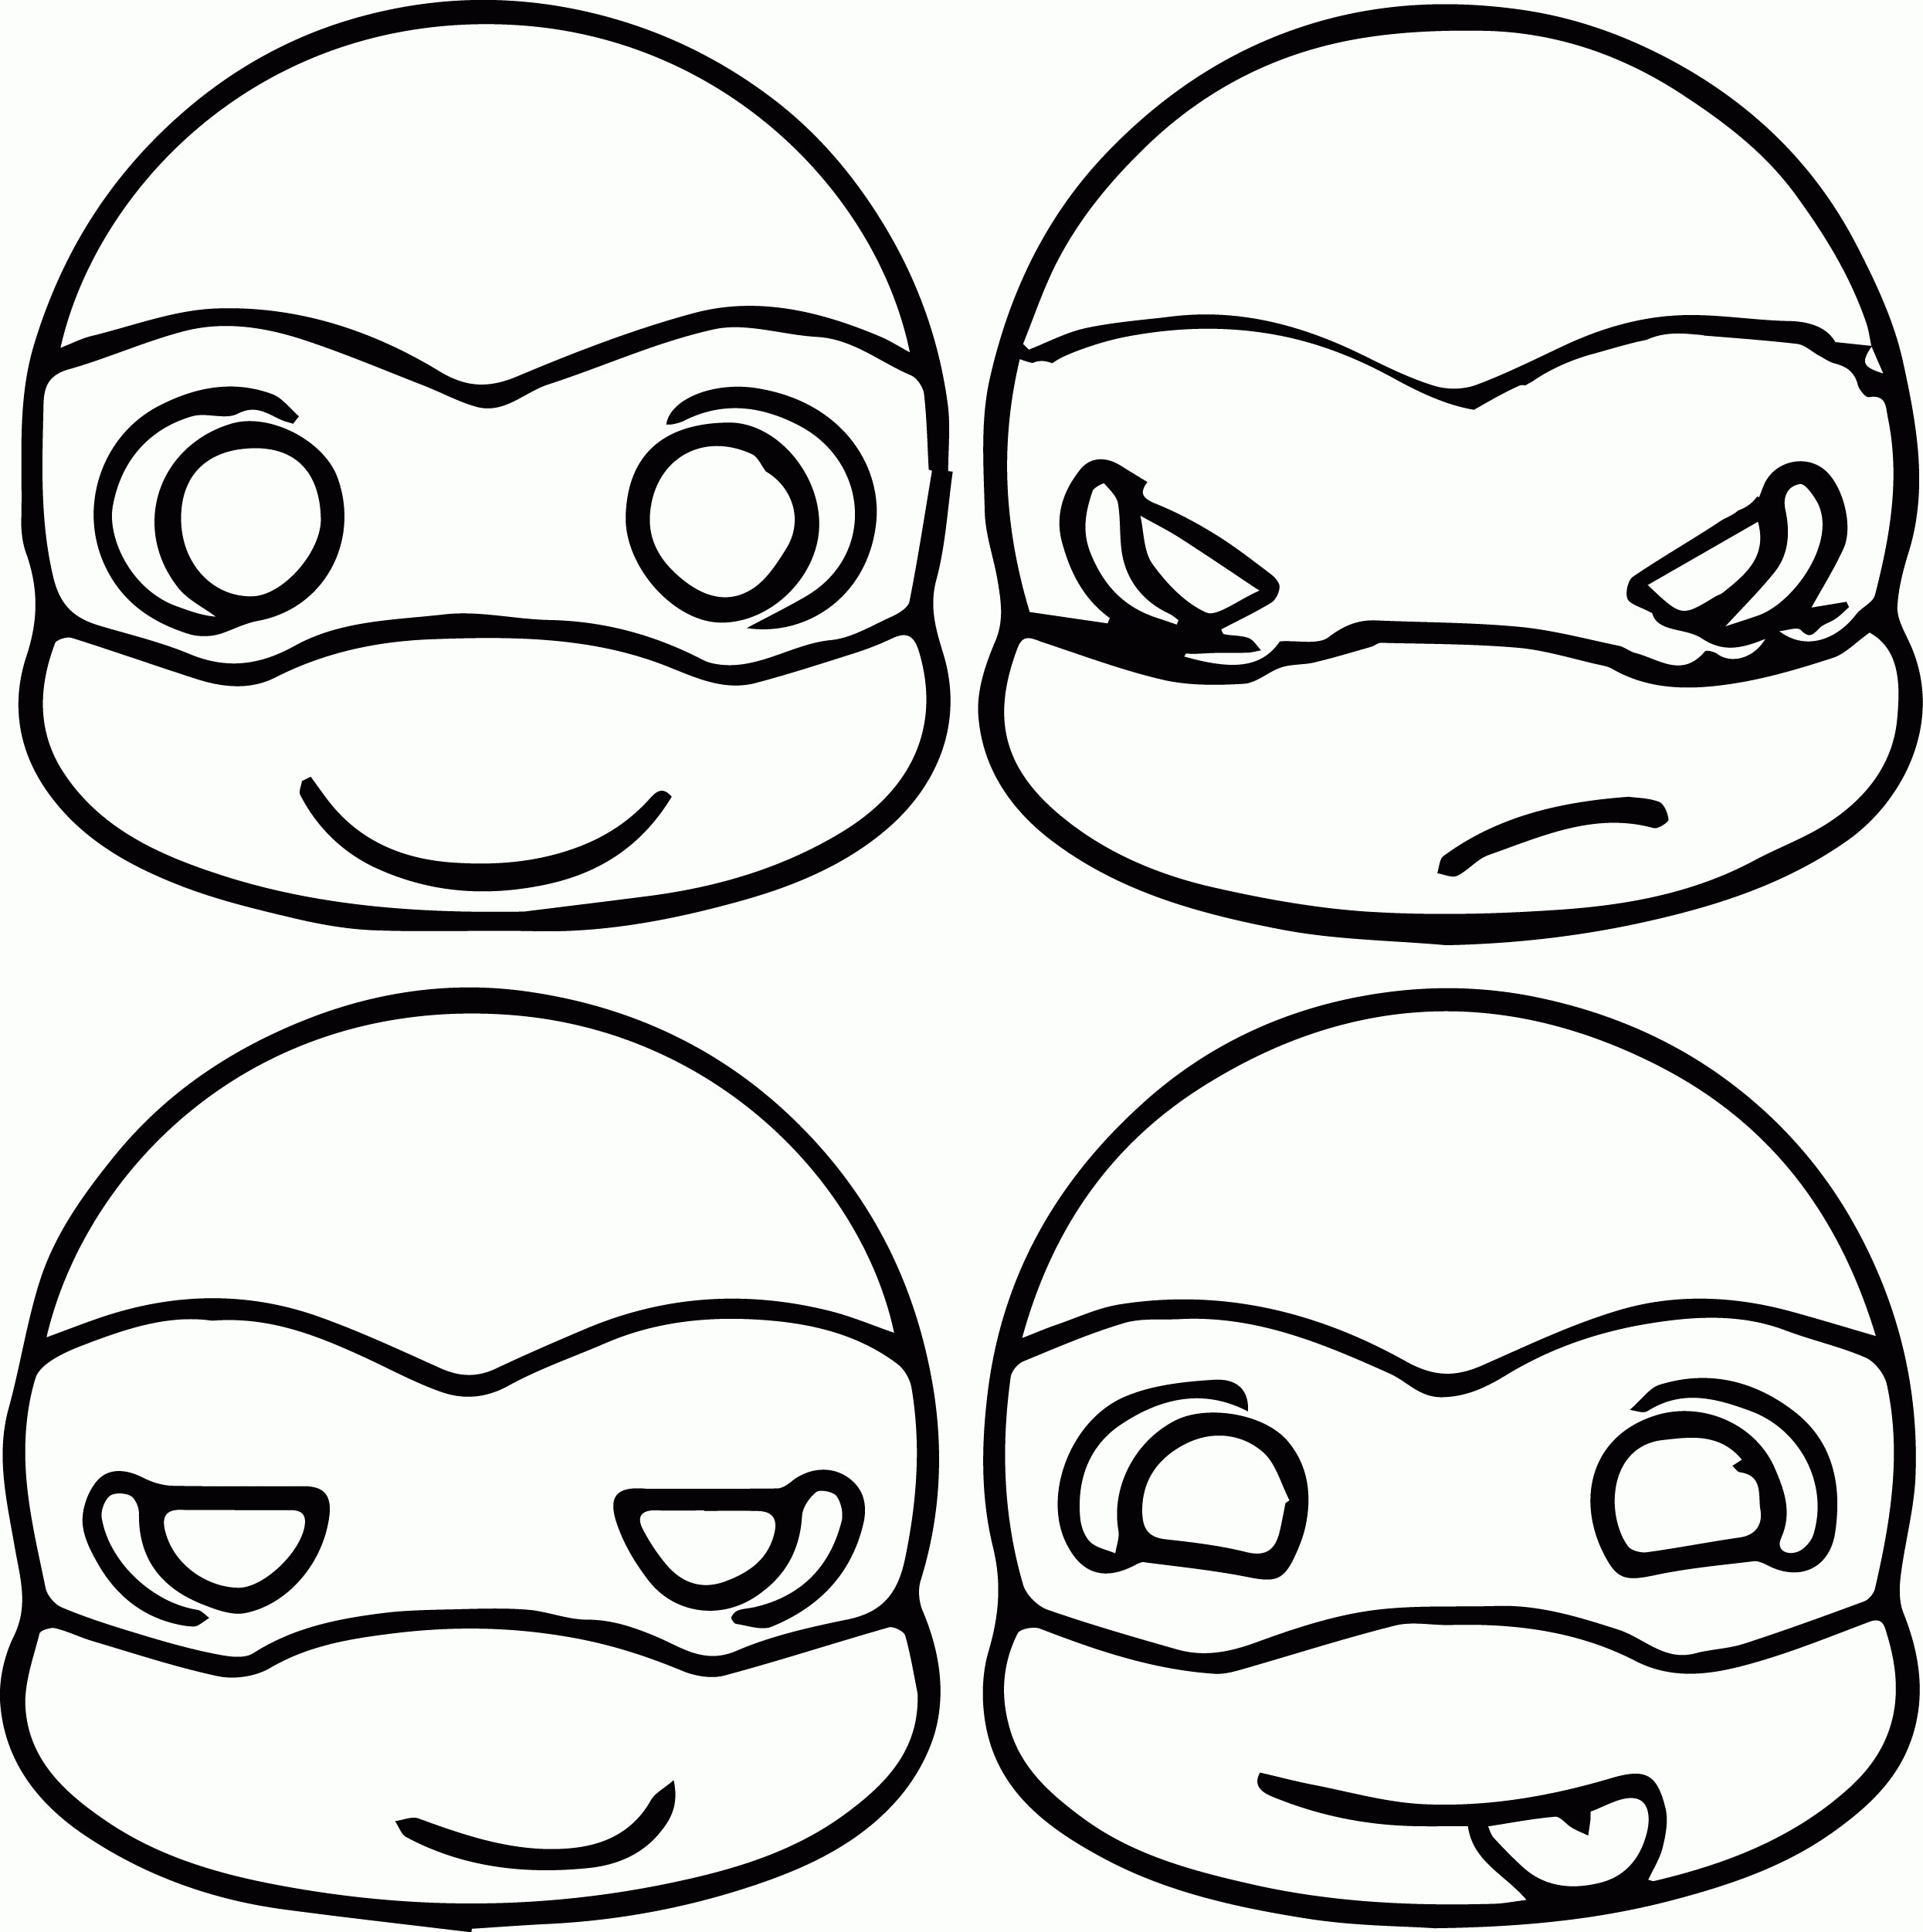 Preschool Teenage Mutant Ninja Turtles Coloring Pages Printable - Teenage Mutant Ninja Turtles Free Printable Mask